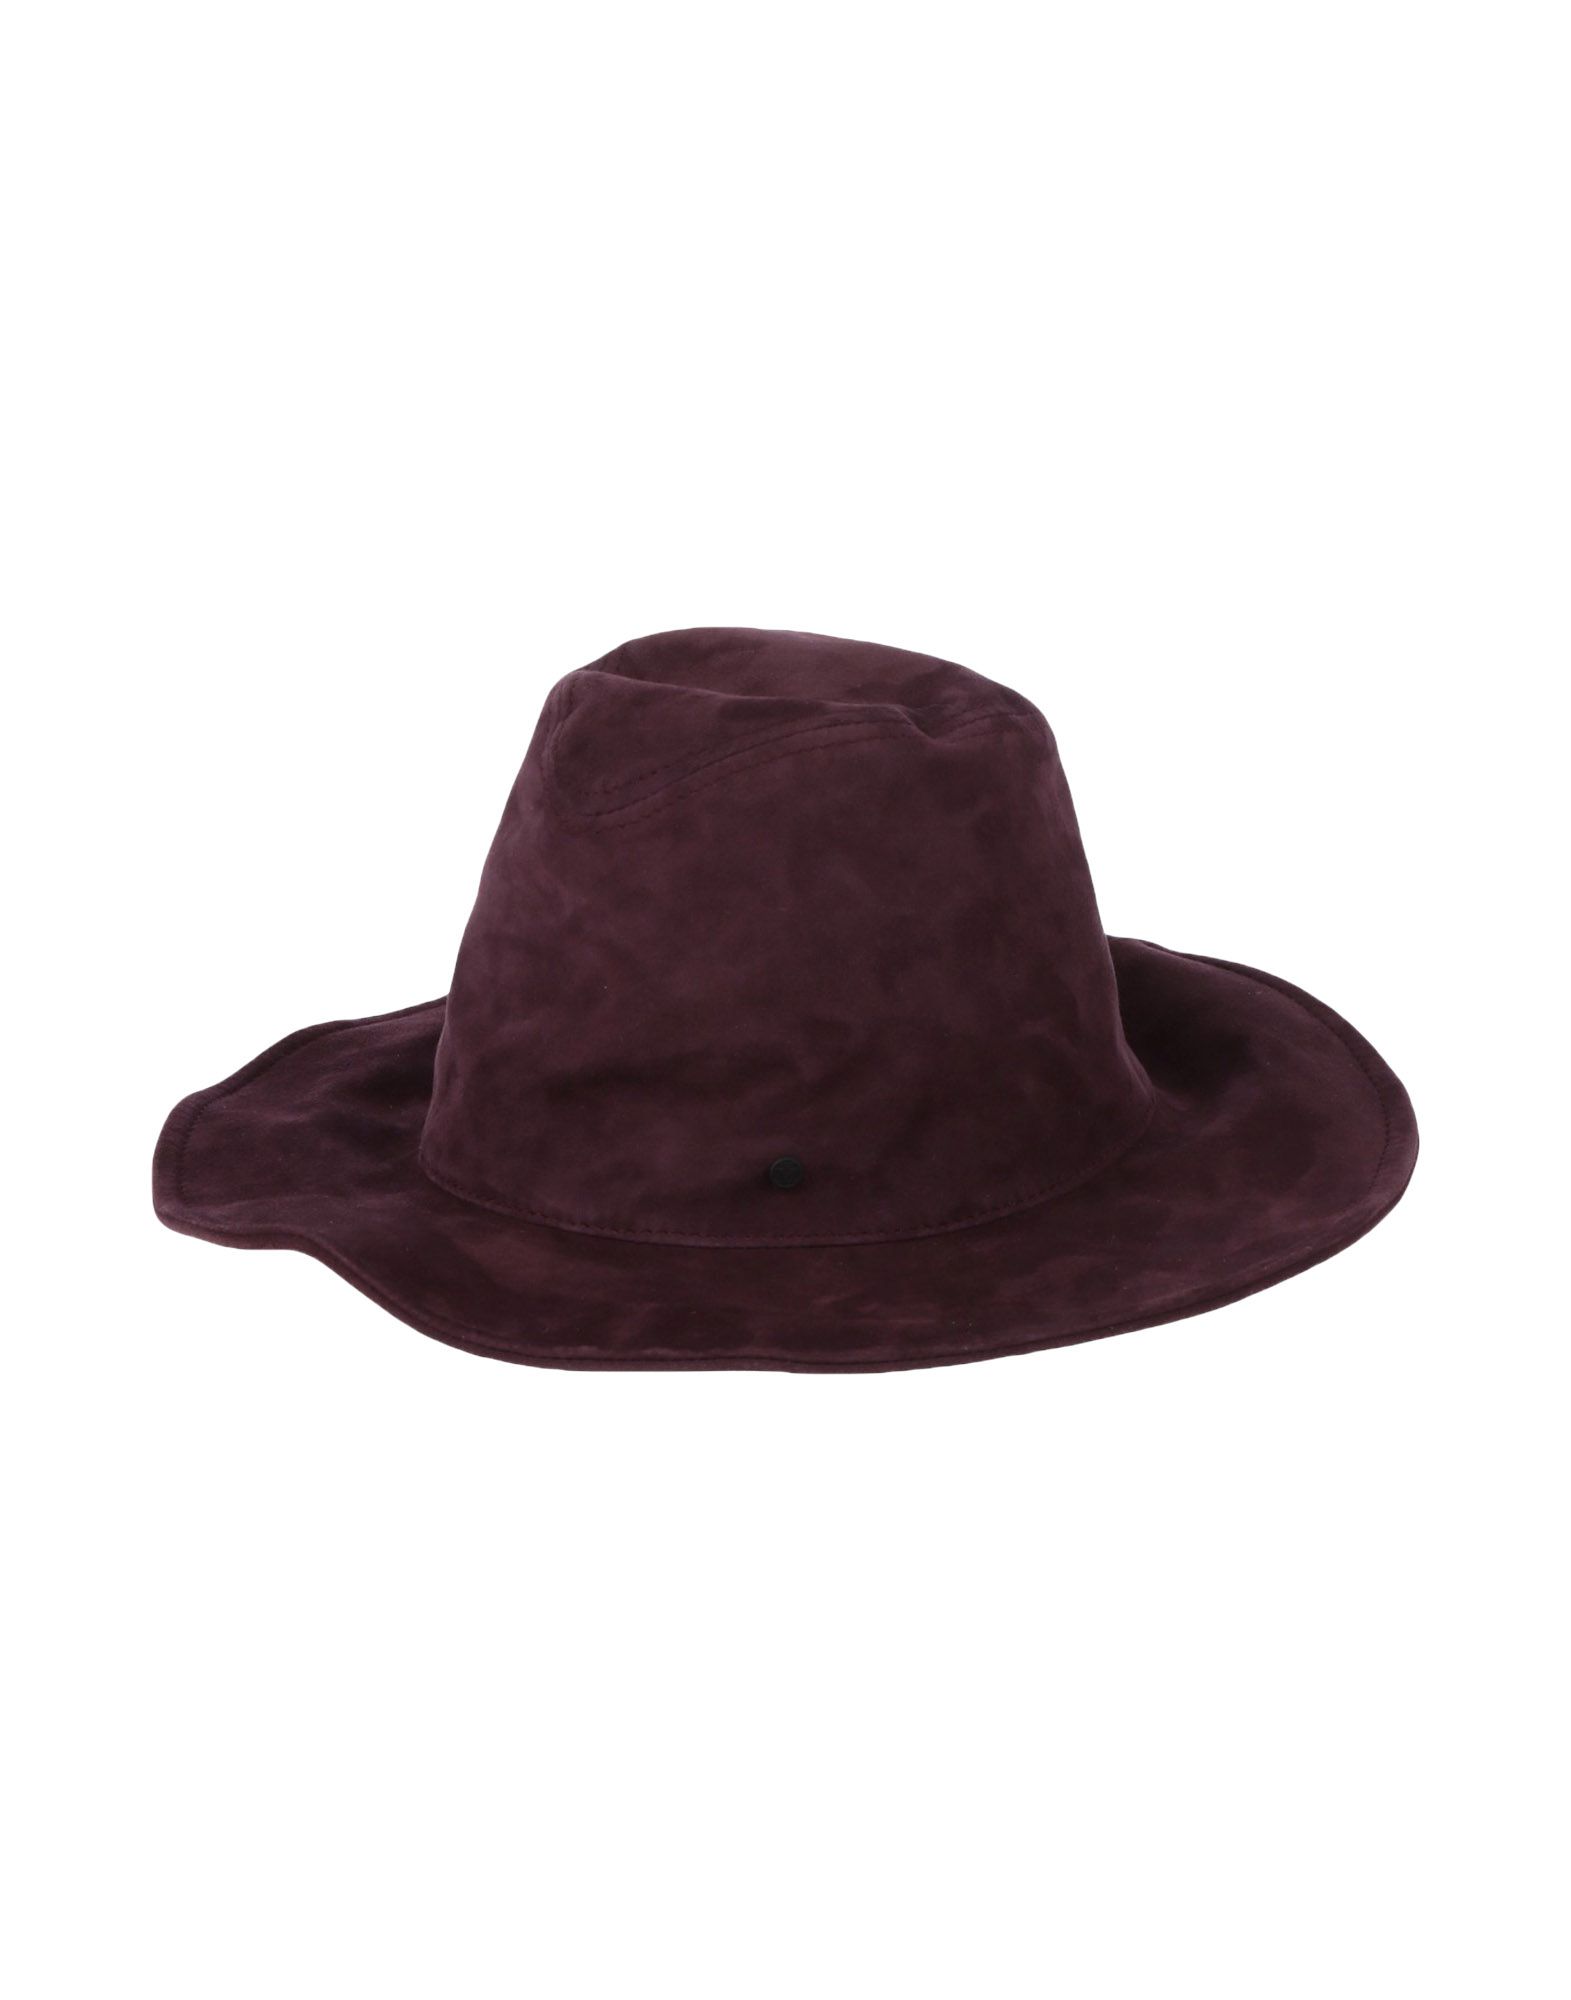 《送料無料》MAISON MICHEL レディース 帽子 ディープパープル M 革 100%